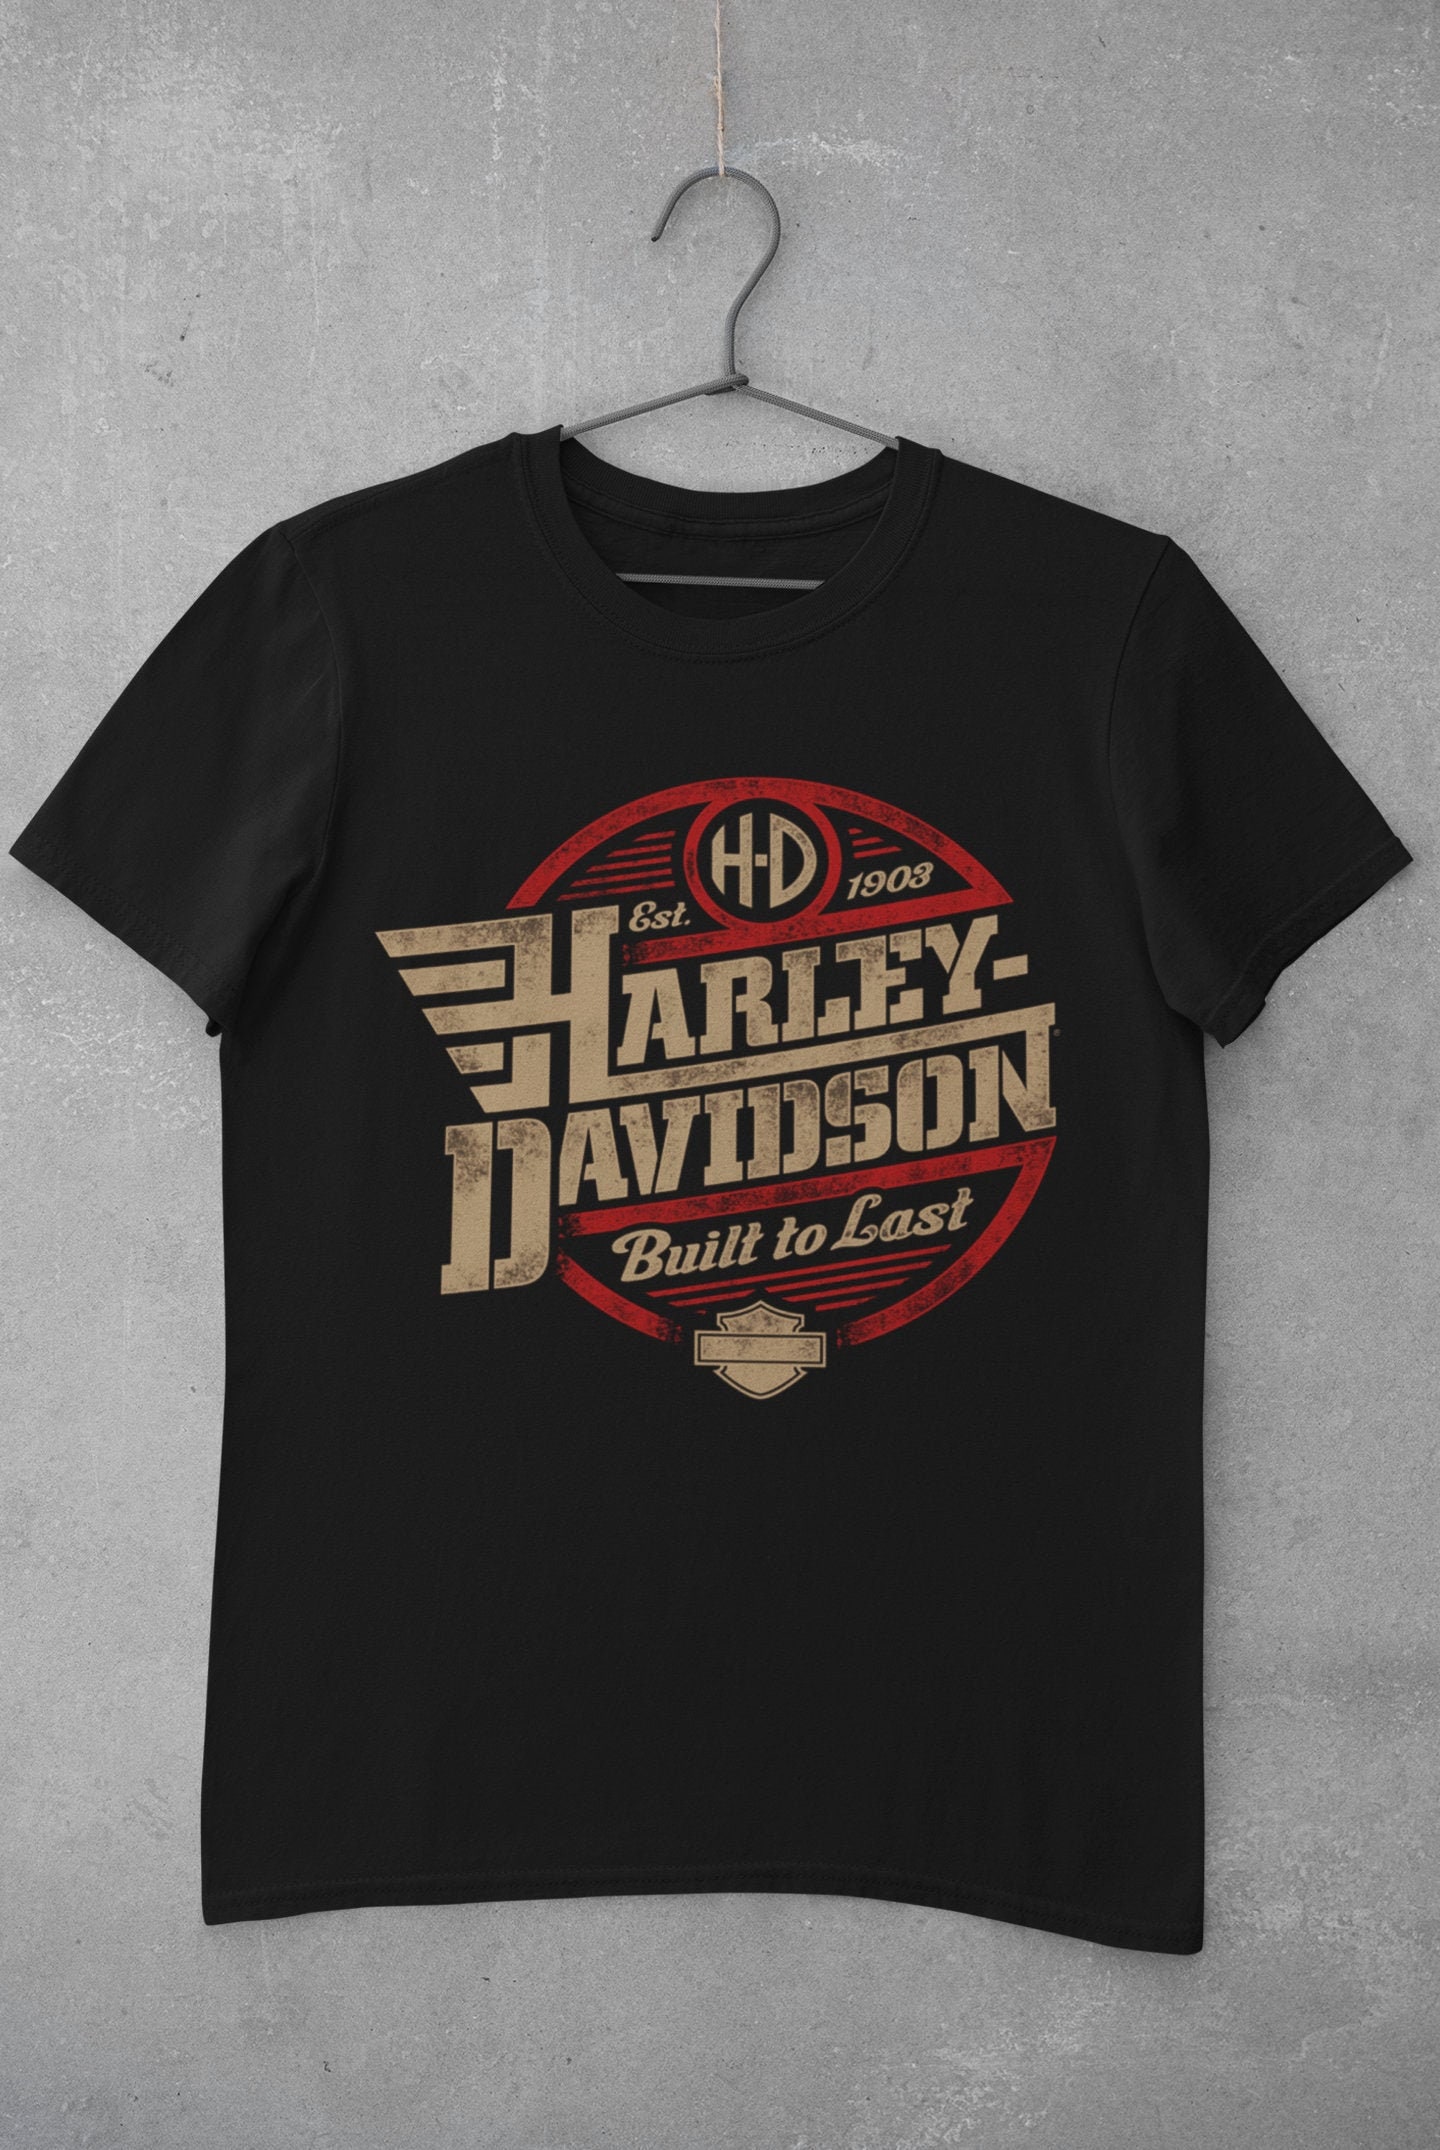 Retro Harley Davidson Unisex T SHIRT Motorcycle Pattern | Etsy